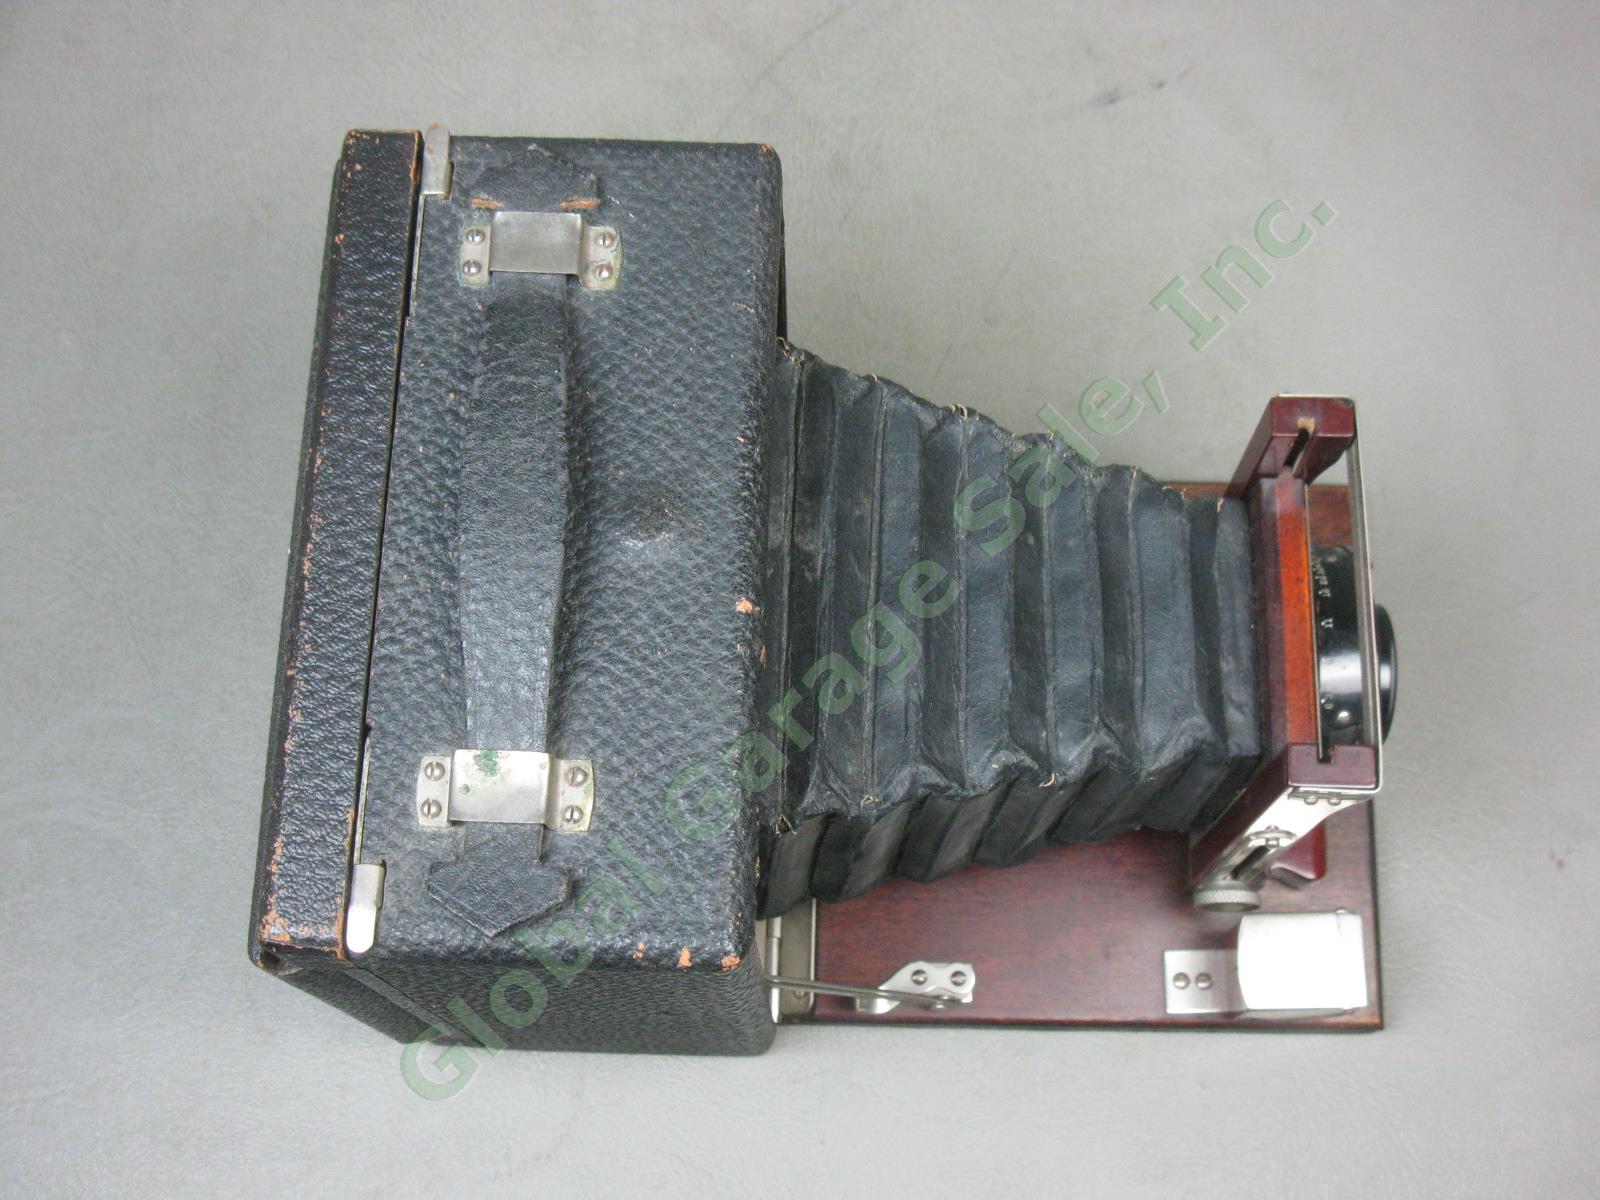 Antique Gundlach 4x5 Folding Camera Wollensack Betax No 2 f/6.3 Series IV Lens 8